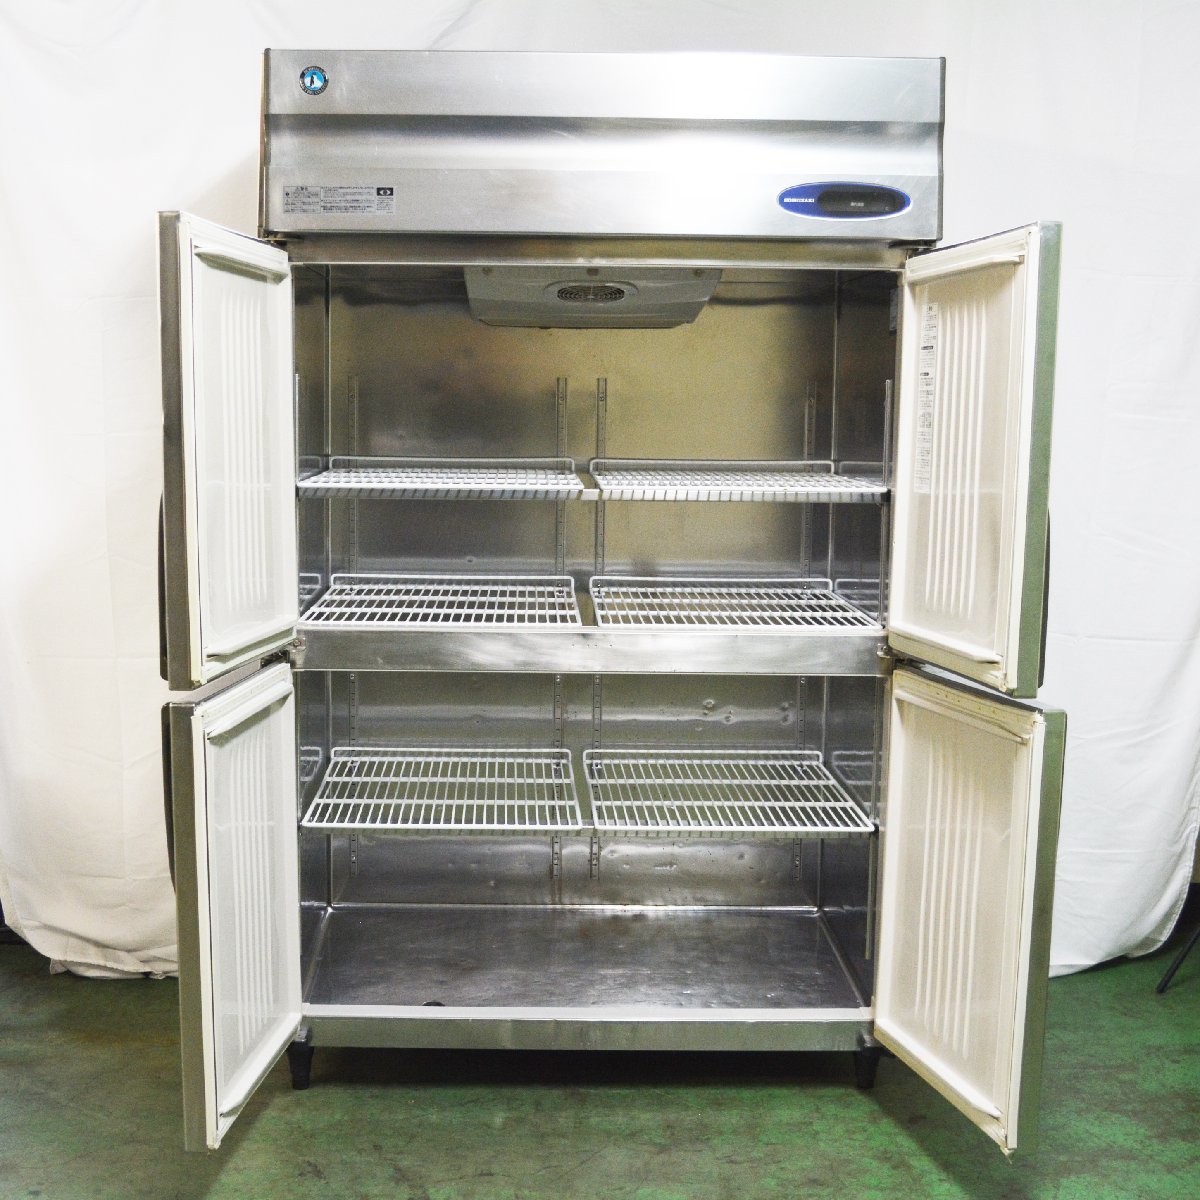 業務用ホシザキタテ型冷蔵庫4ドアHR-120LZ-ML W1200×D800×H1890 中古